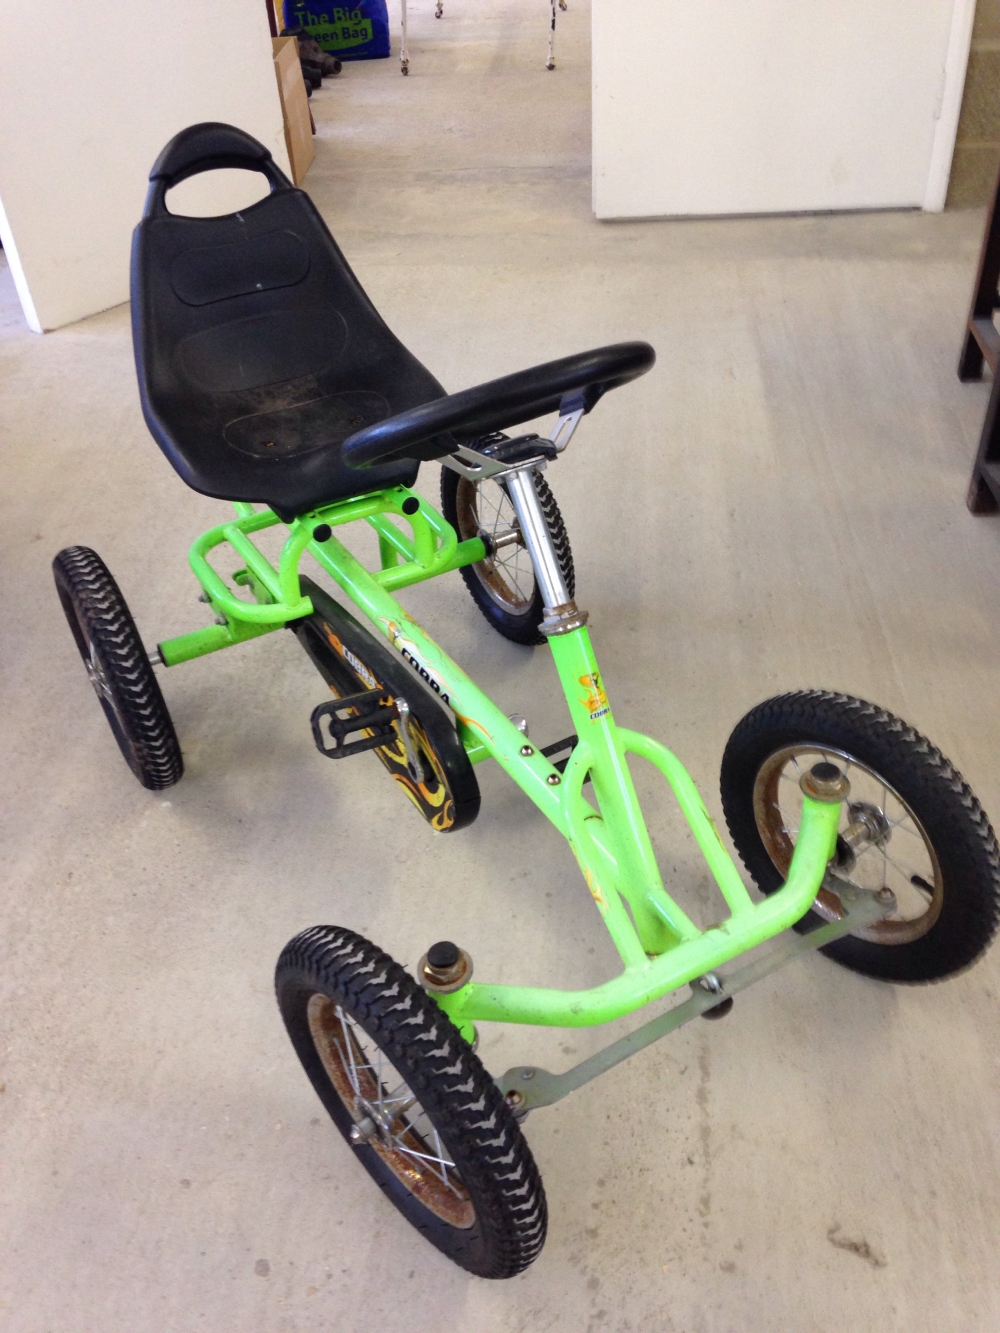 A childs 'Cobra' fluorescent green pedal go-kart